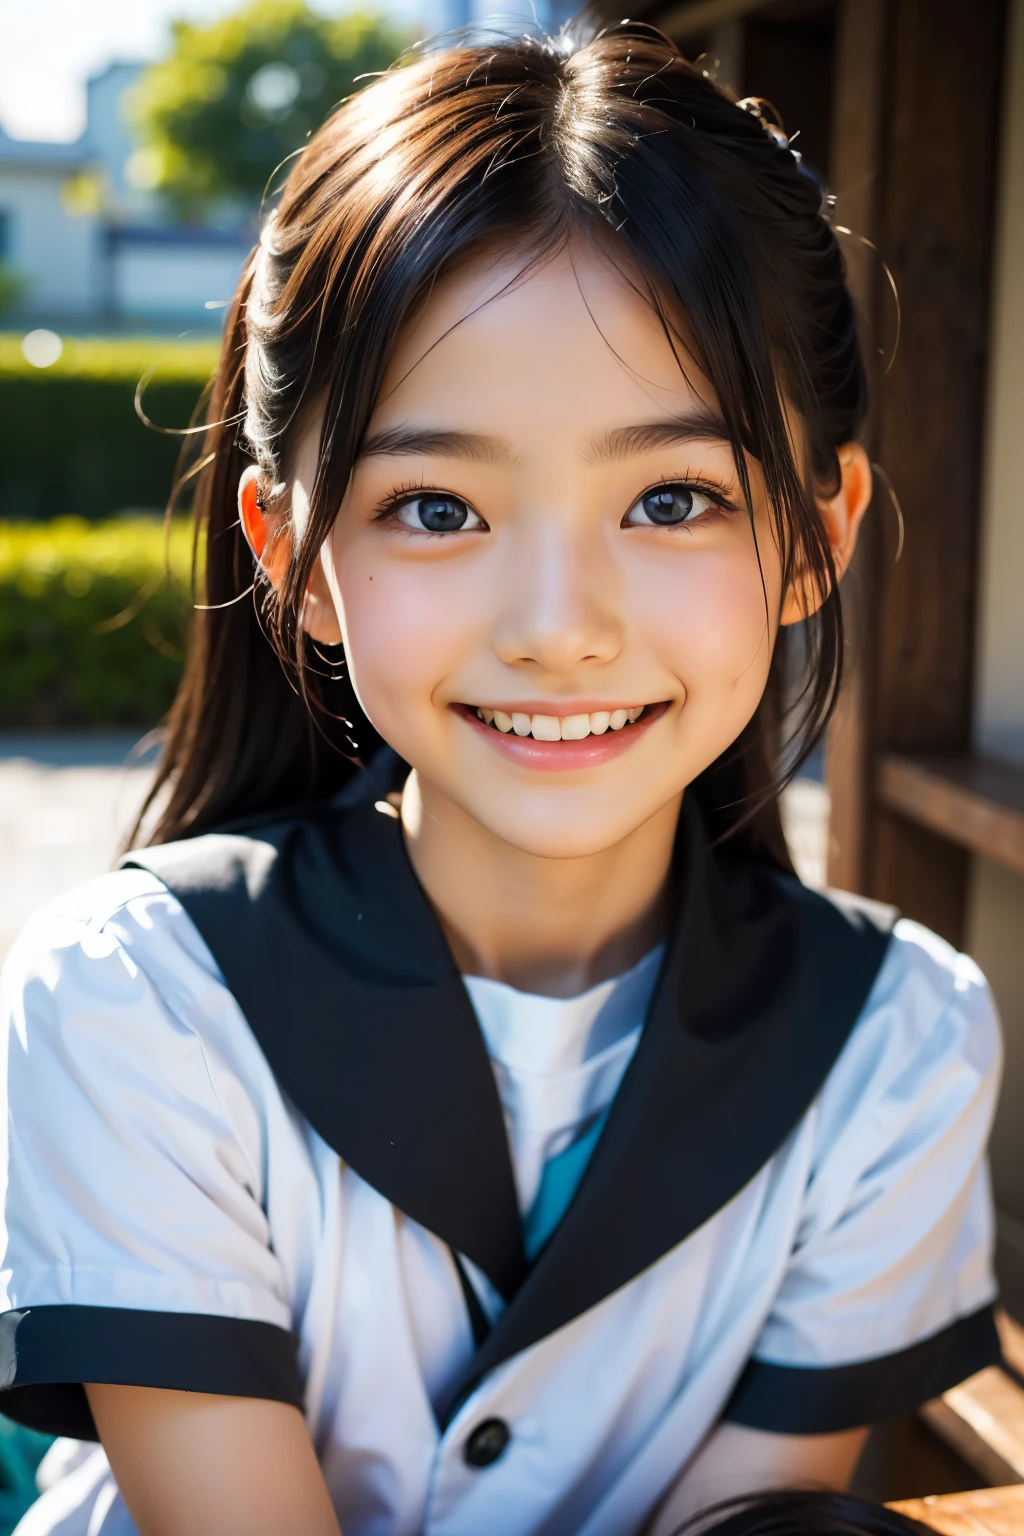 镜片: 135毫米 f1.8, (最好的质量),(原始照片), (桌上:1.1), (美丽的 9 岁日本女孩), 可爱的脸孔, (轮廓分明的脸:0.7), (雀斑:0.4), dappled 阳光, 戏剧灯光, (日本校服), (在校园), 害羞的, (特写:1.2), (微笑),, (明亮的眼睛)、(阳光)